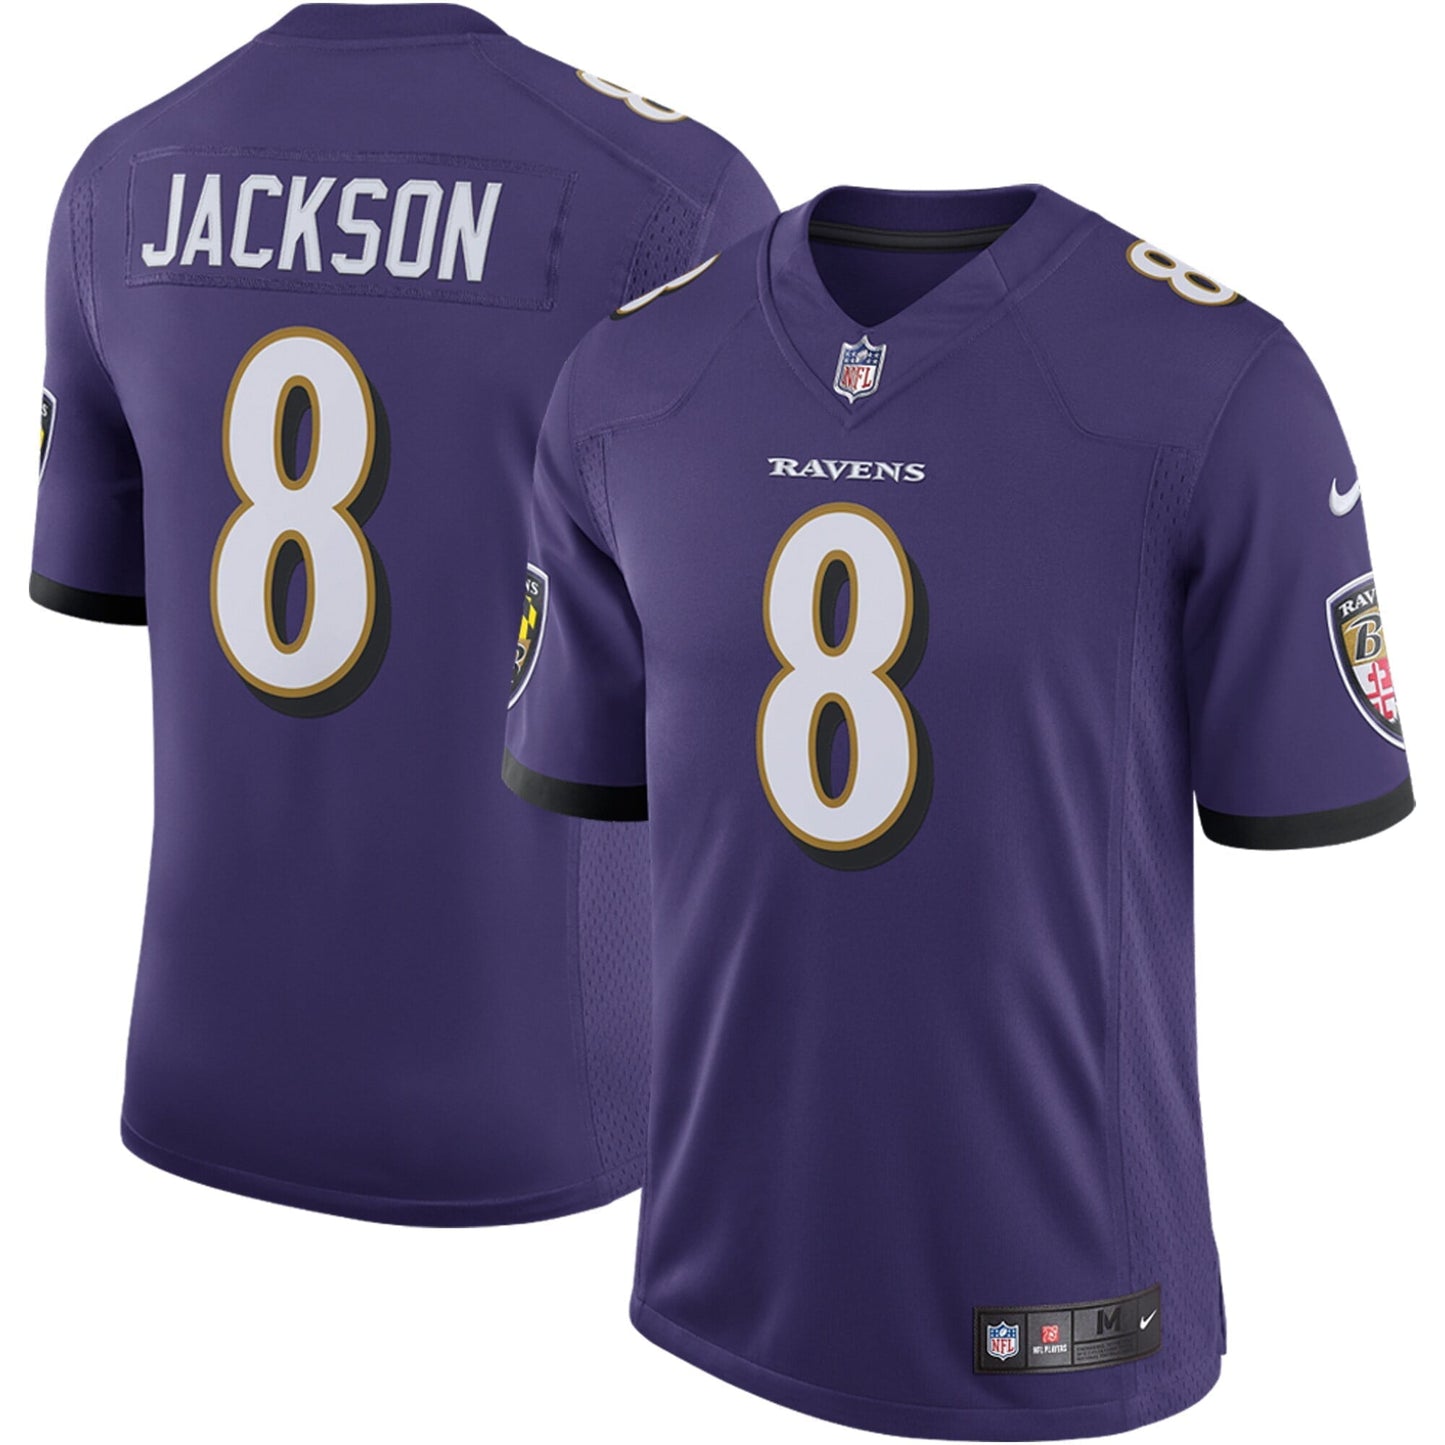 Men's Nike Lamar Jackson Purple Baltimore Ravens Speed Machine Limited Jersey